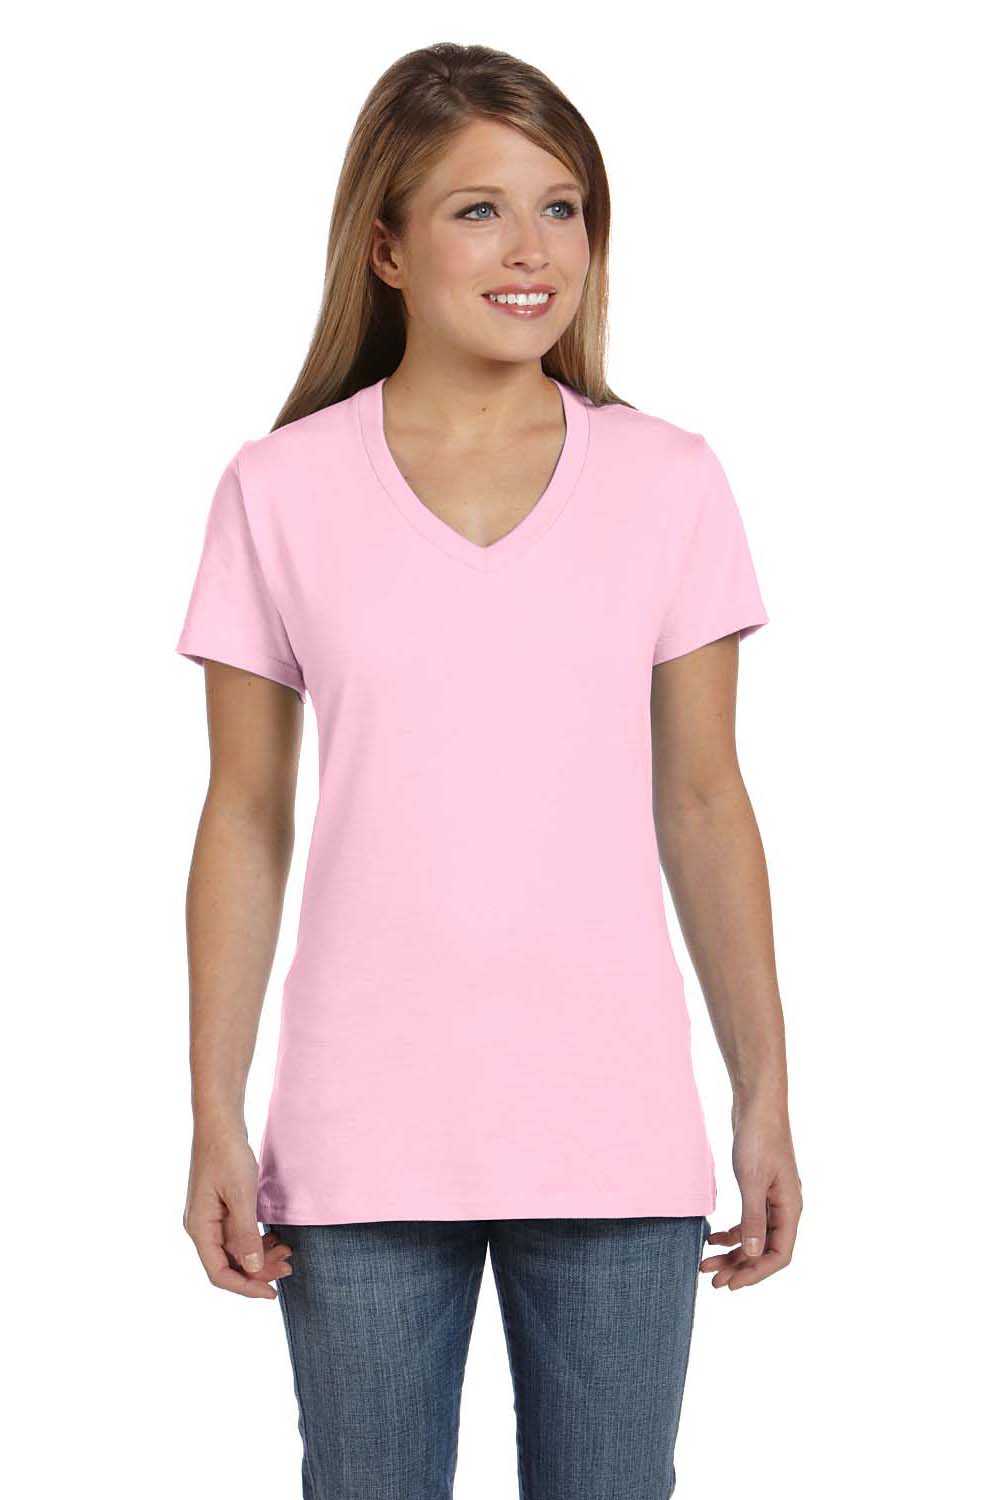 pink t shirt hanes